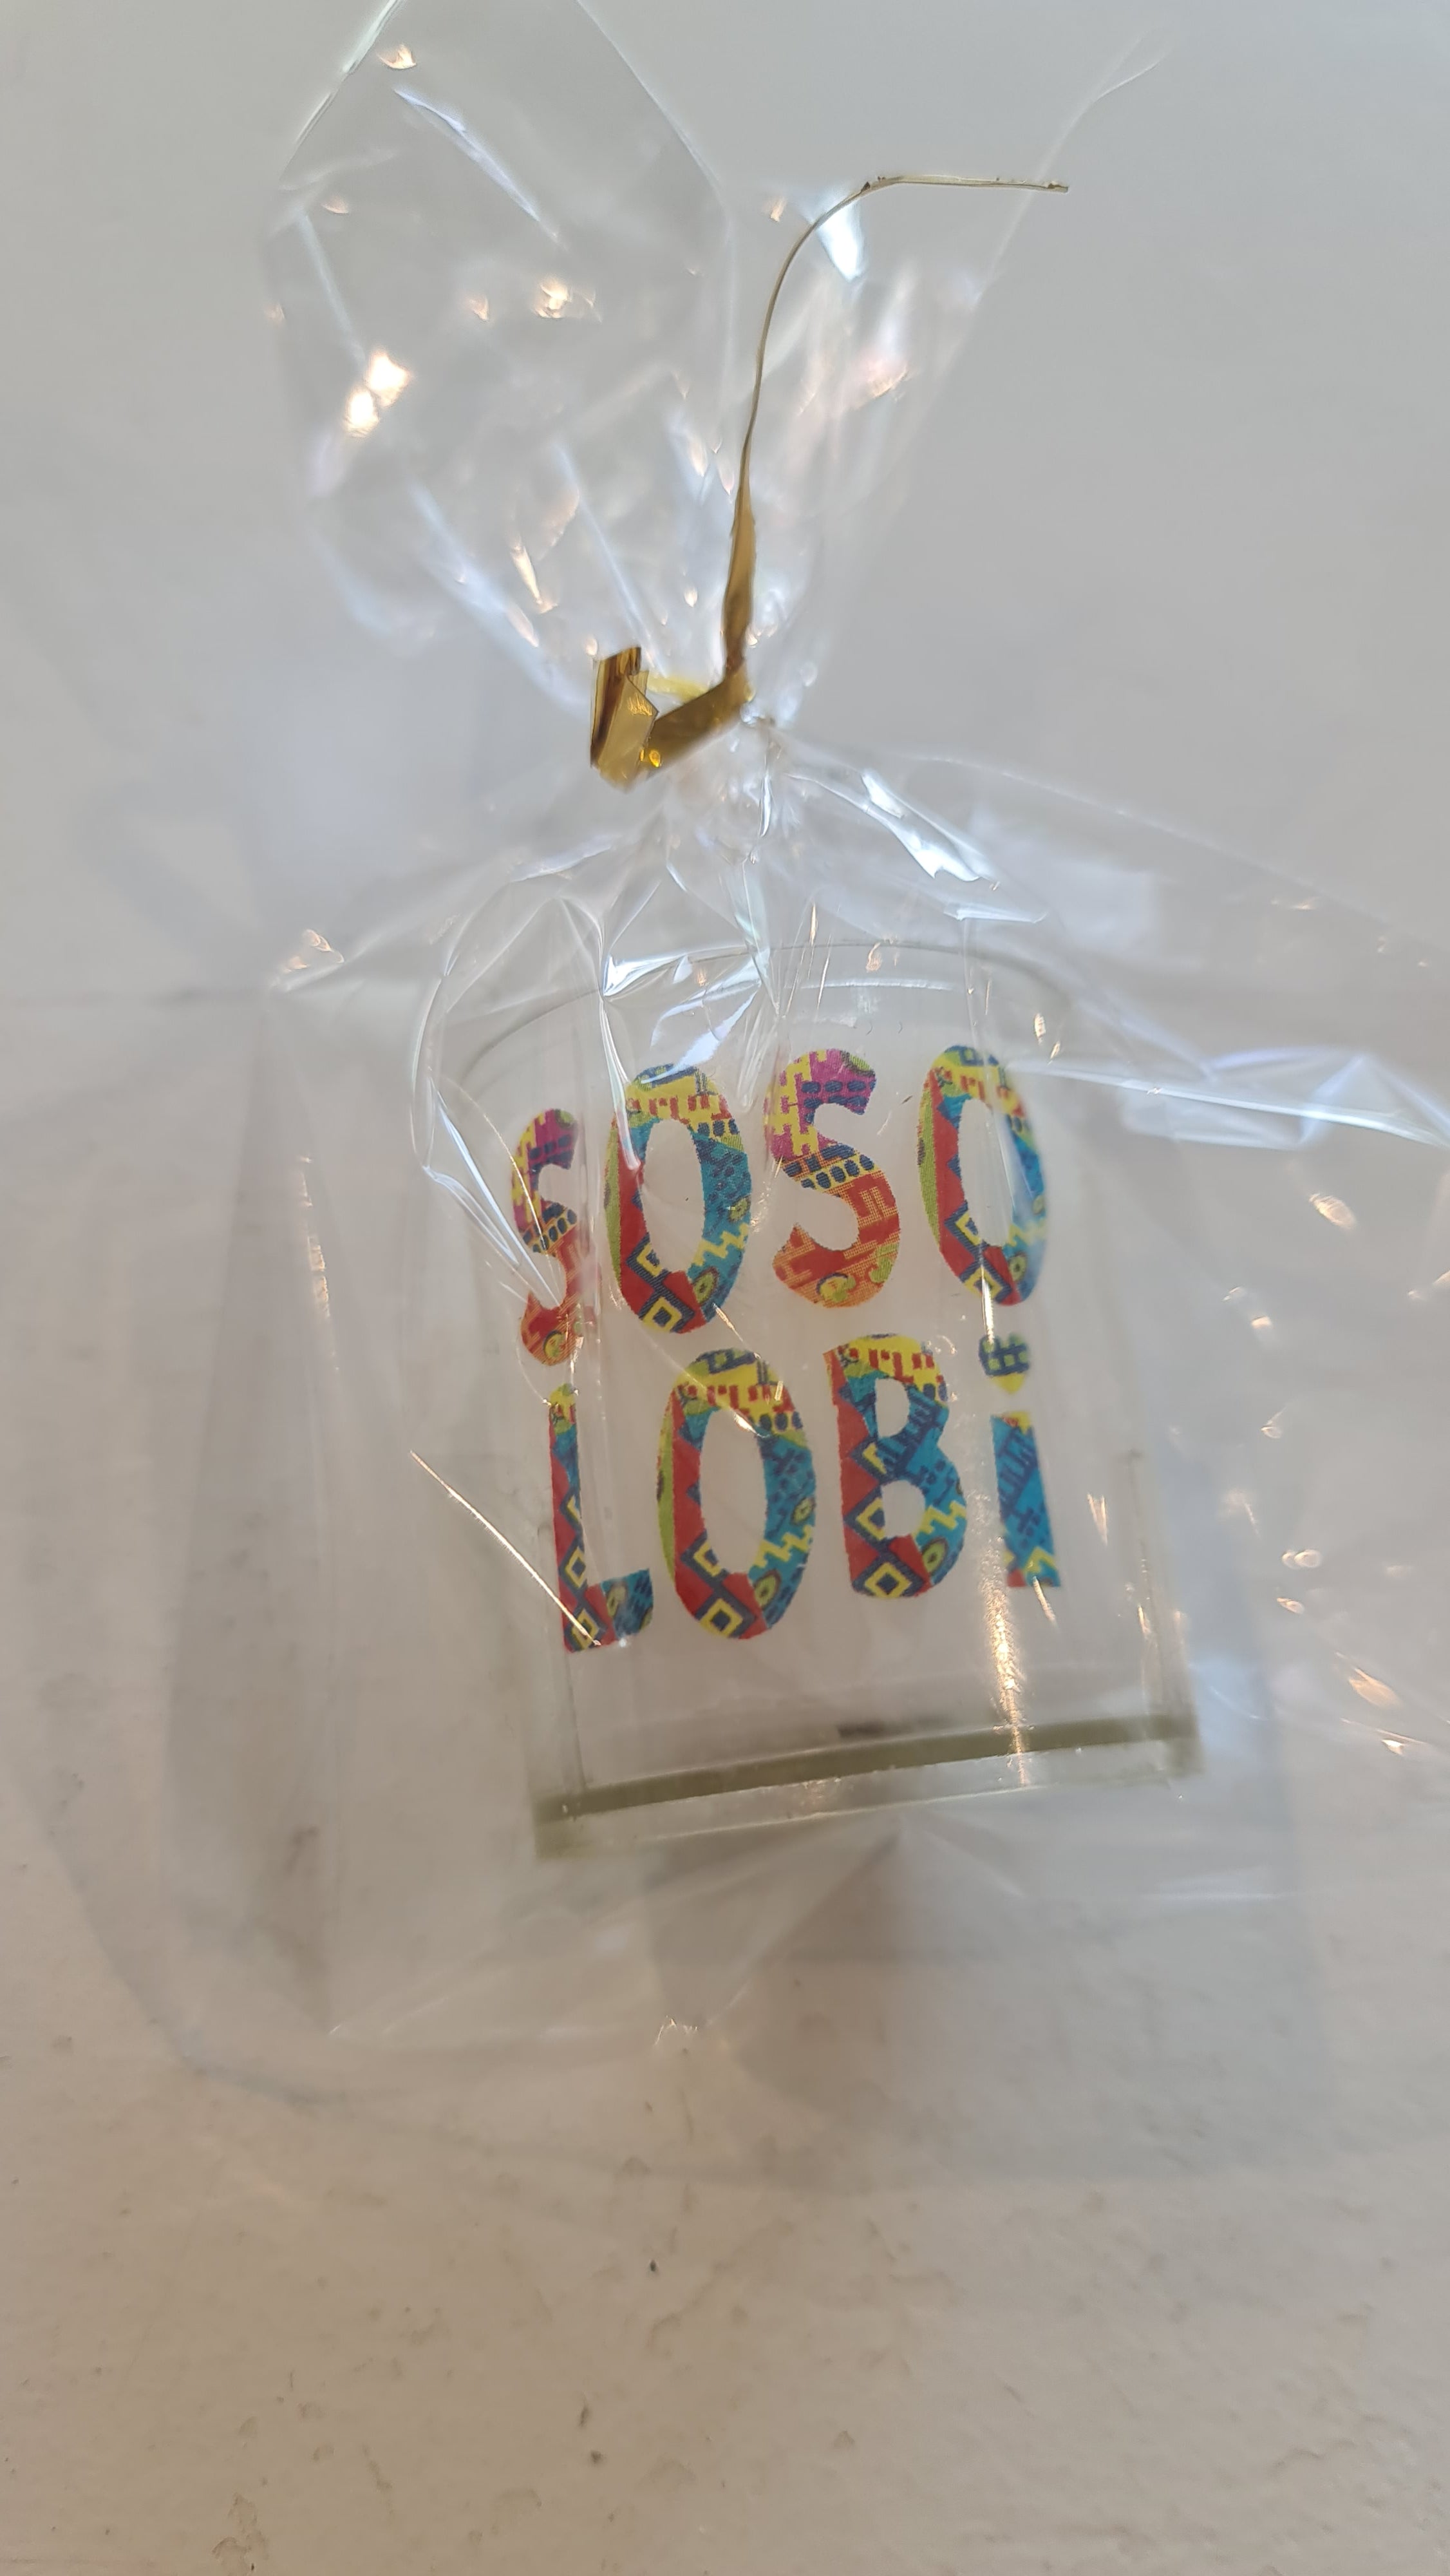 Speel, leer en groei met So So Lobi kaarsje van Colourful Goodies - Inclusiviteit in elk detail.